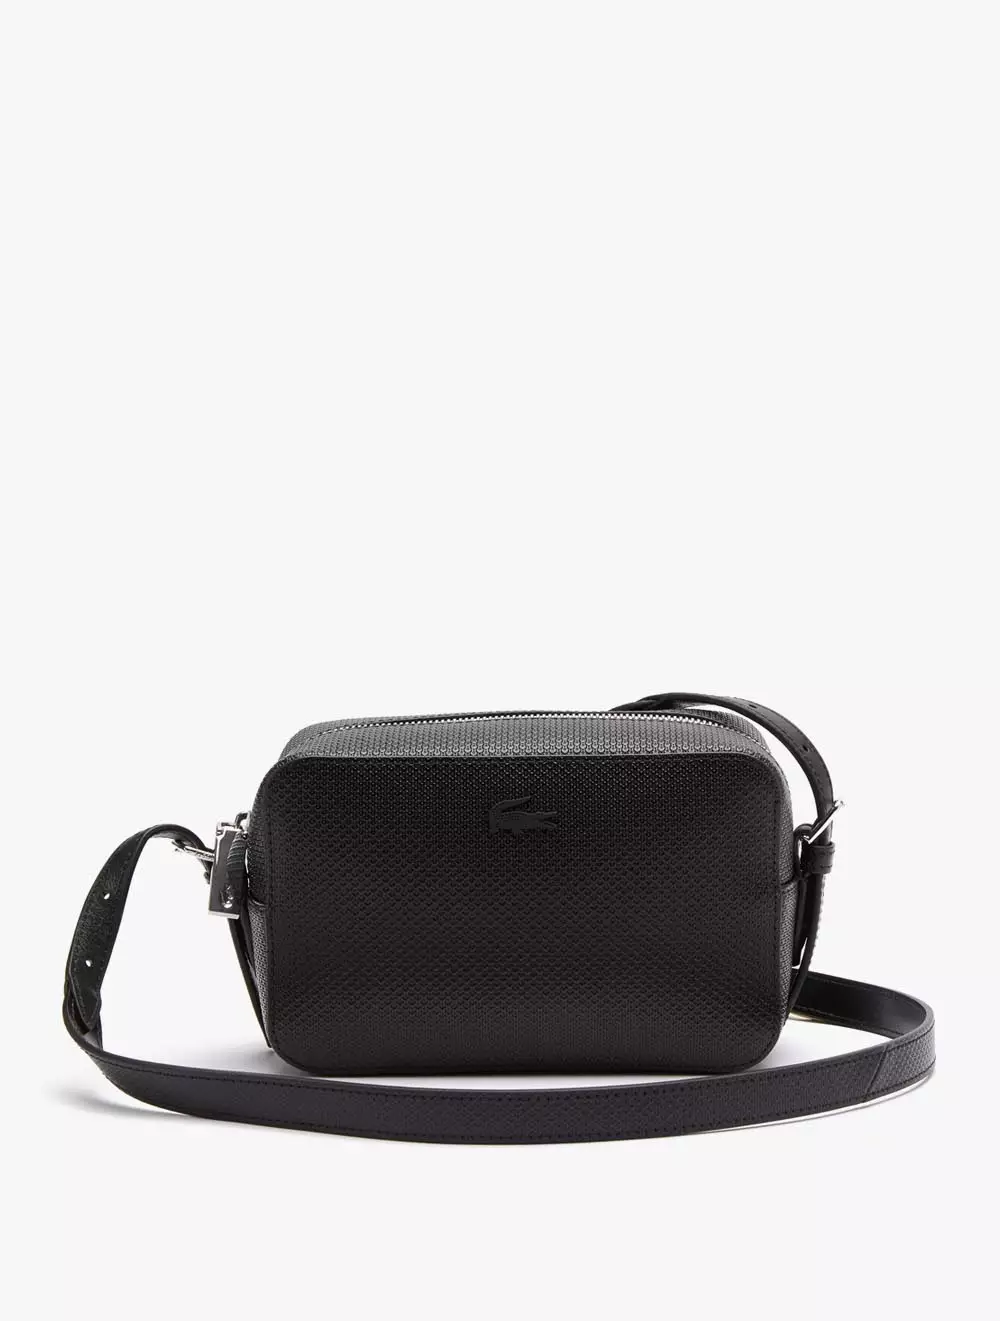 Jual Lacoste Unisex Chantaco Piqué Leather Small Shoulder Bag